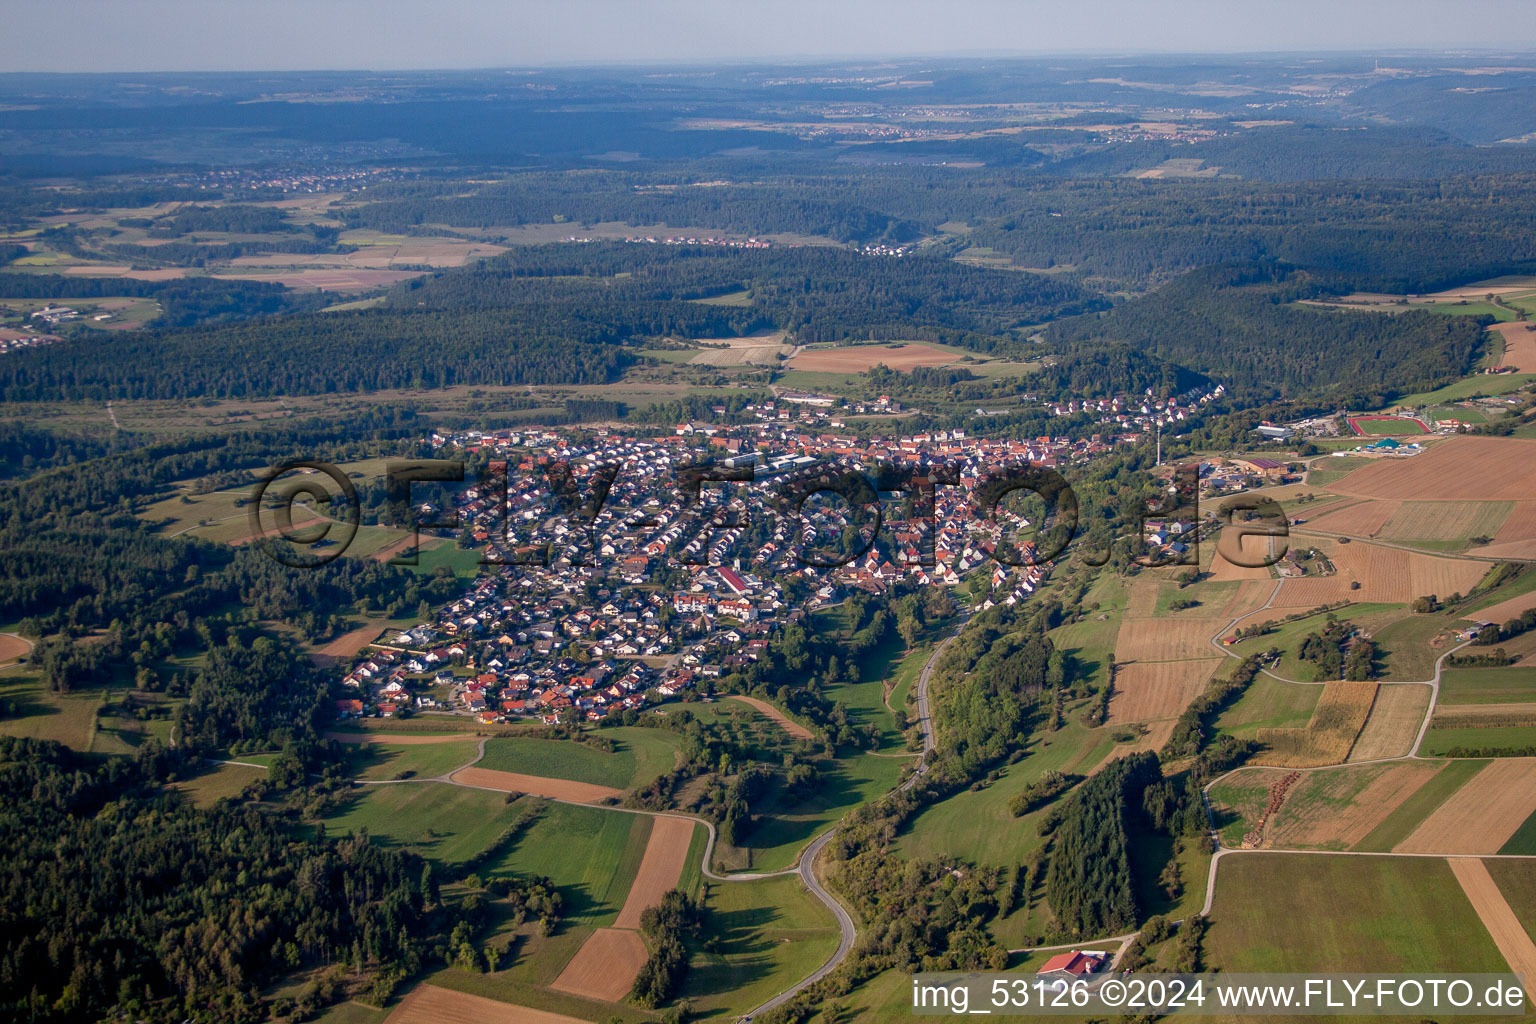 Vue aérienne de Champs agricoles et surfaces utilisables à Haiterbach dans le département Bade-Wurtemberg, Allemagne